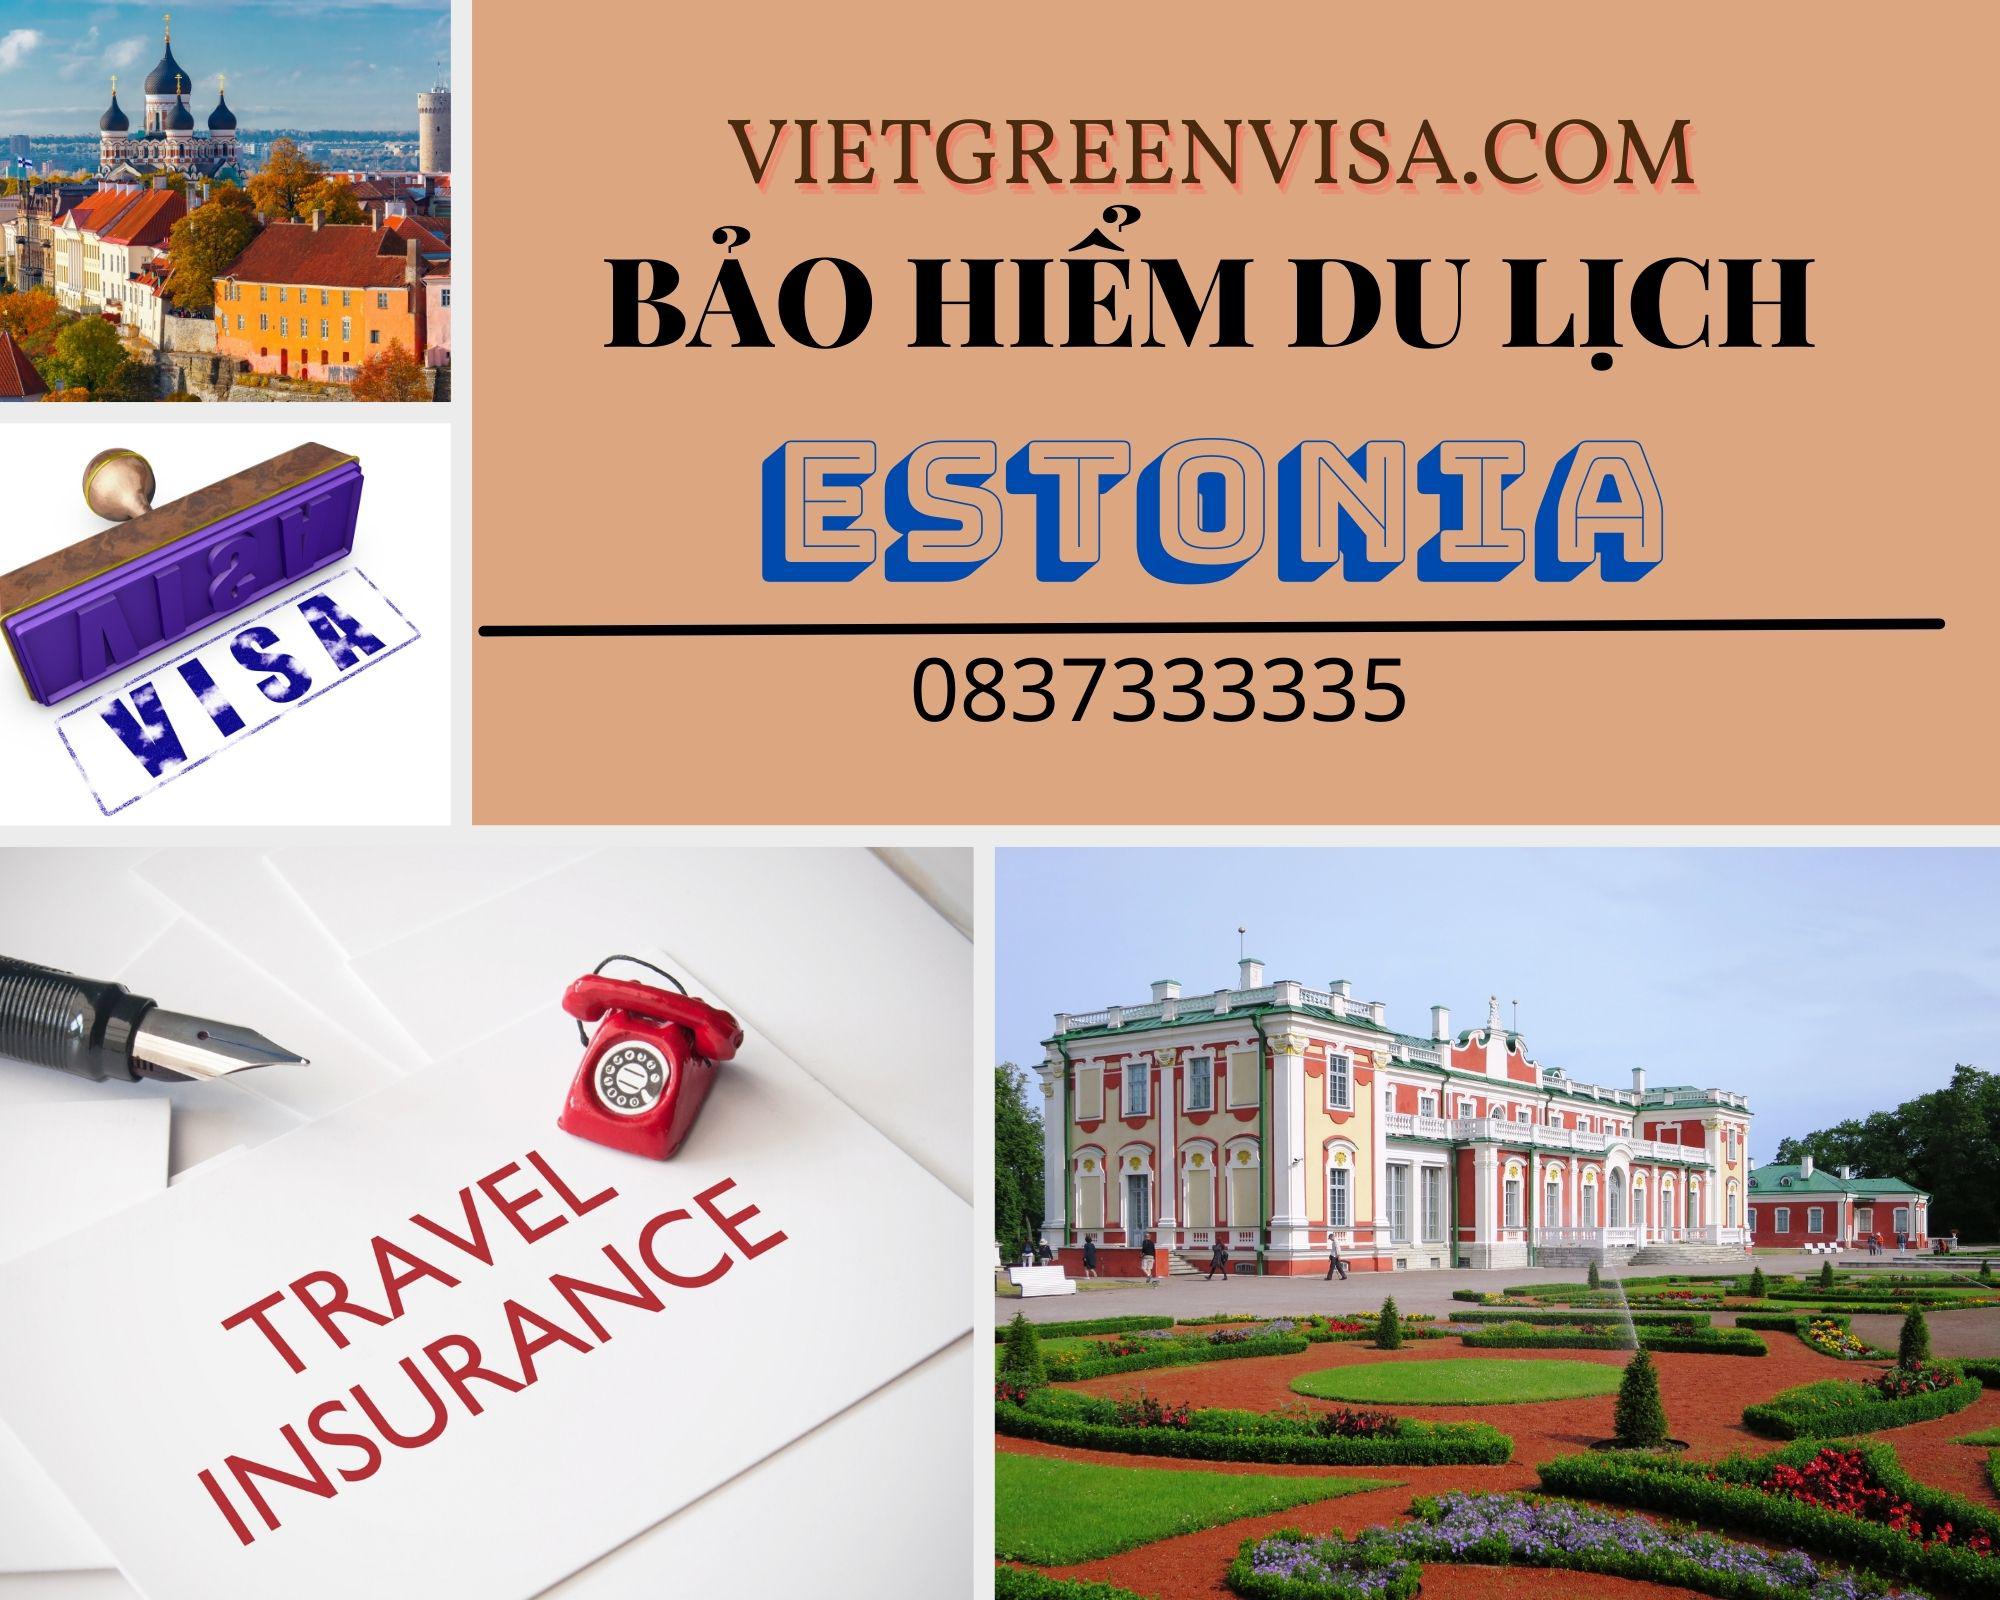 Dịch vụ bảo hiểm du lịch xin visa Estonia giá rẻ